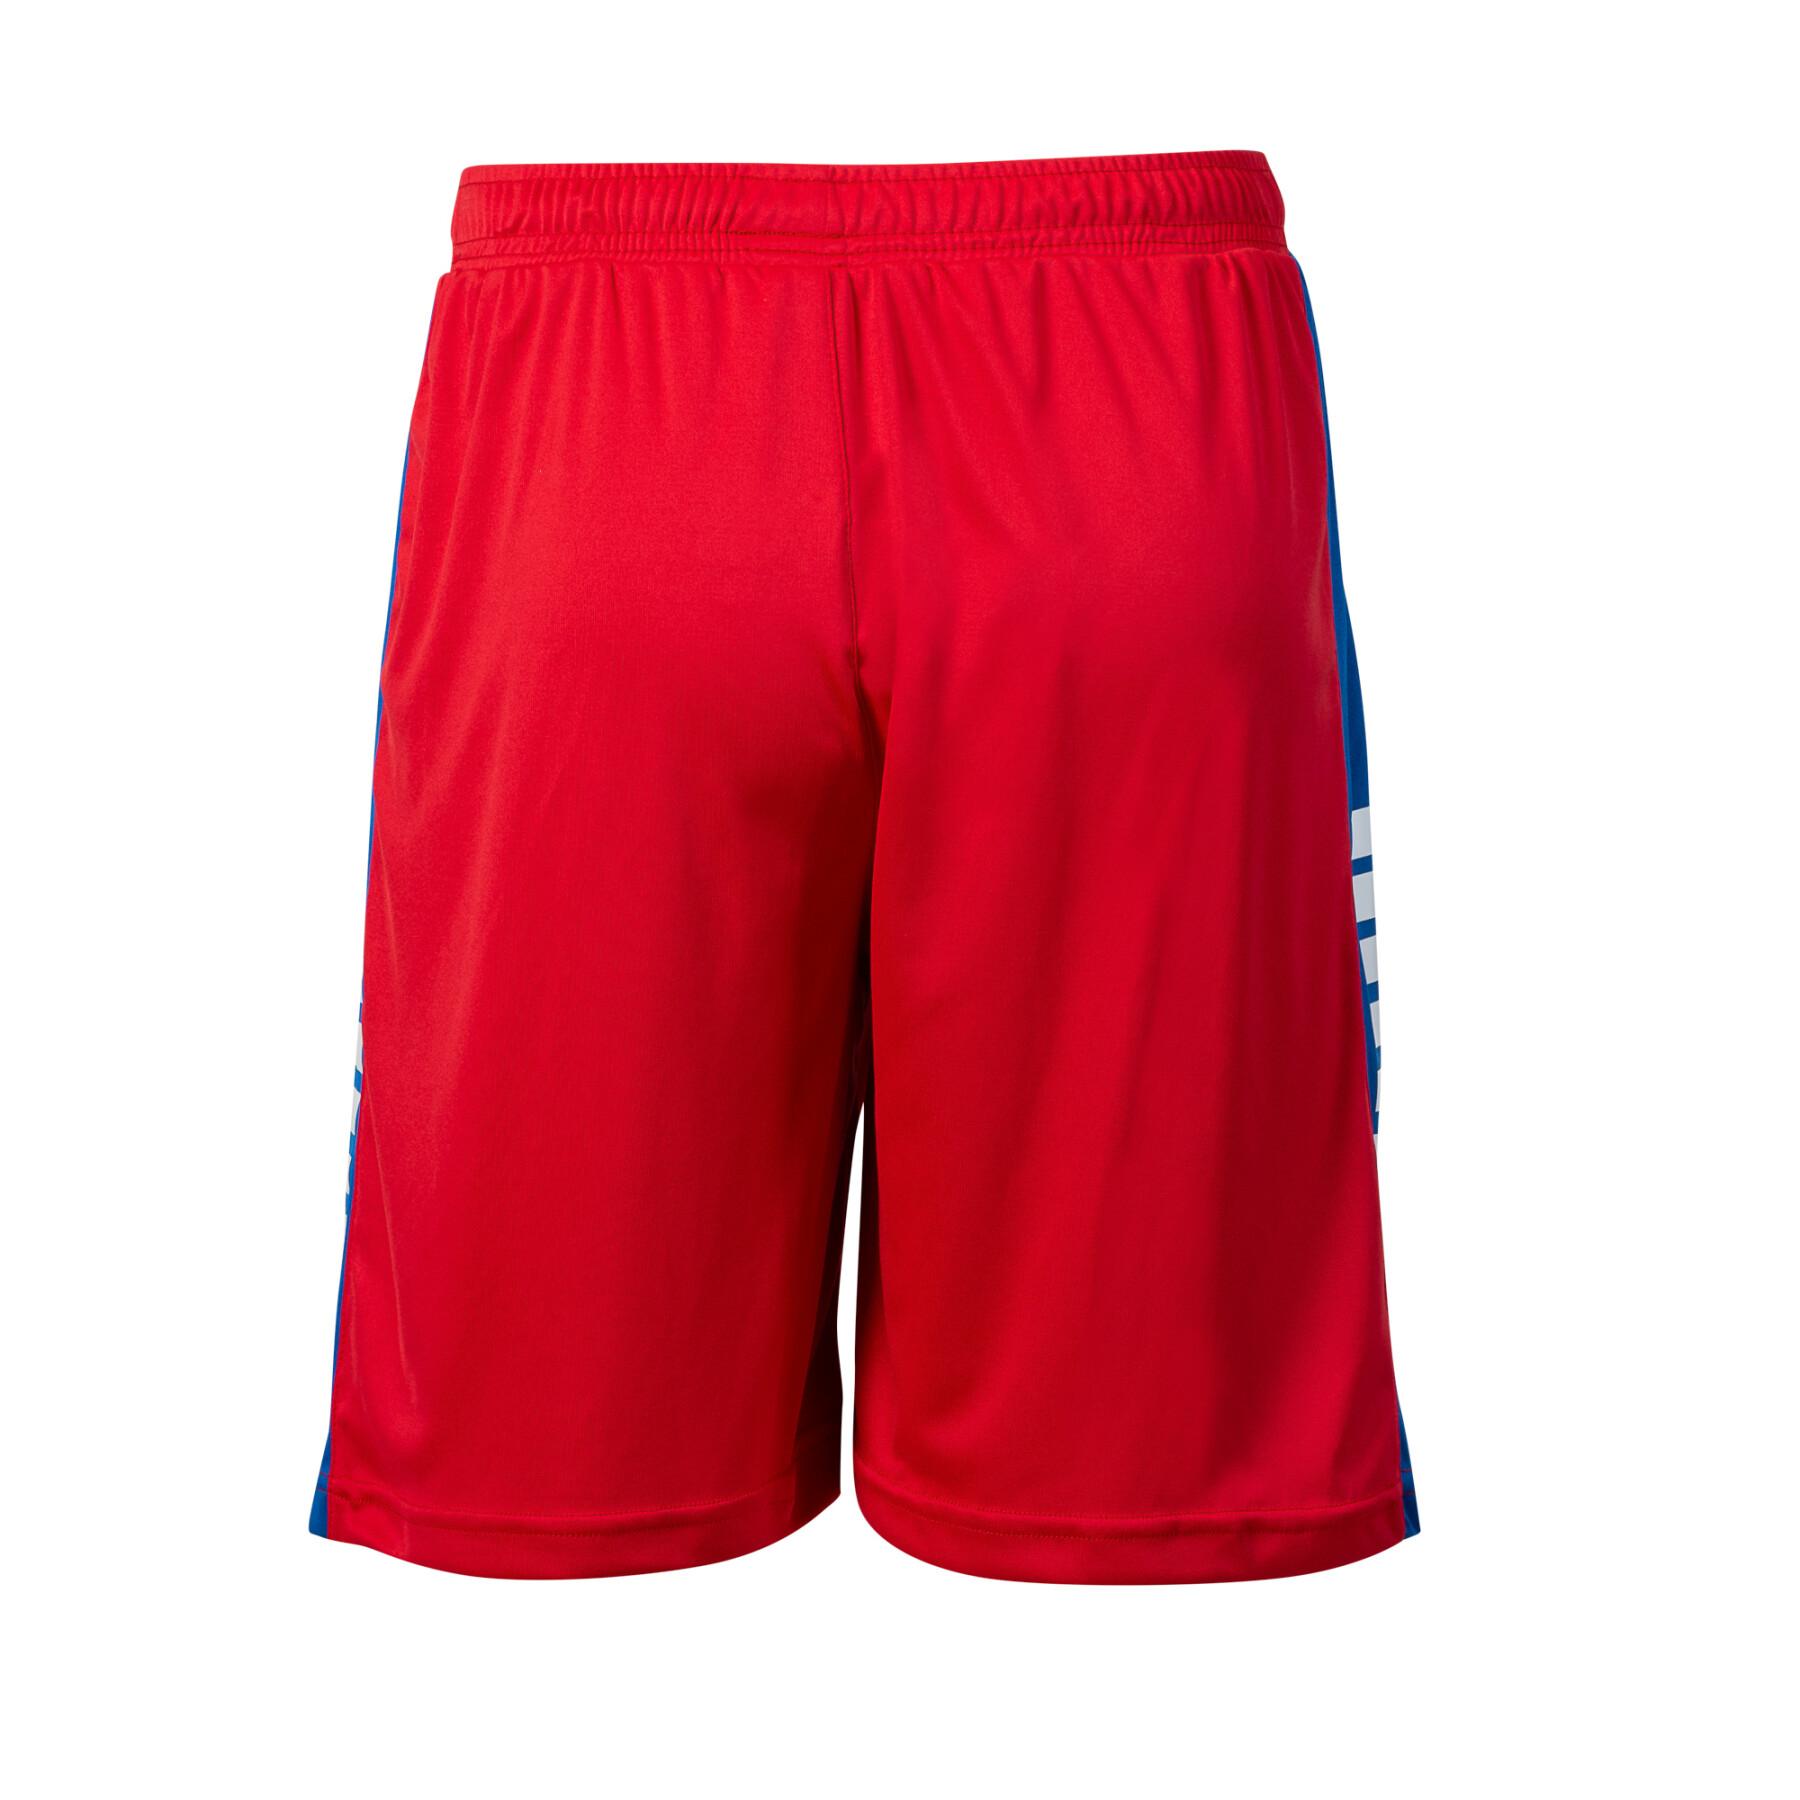 Kinder shorts Select LNH